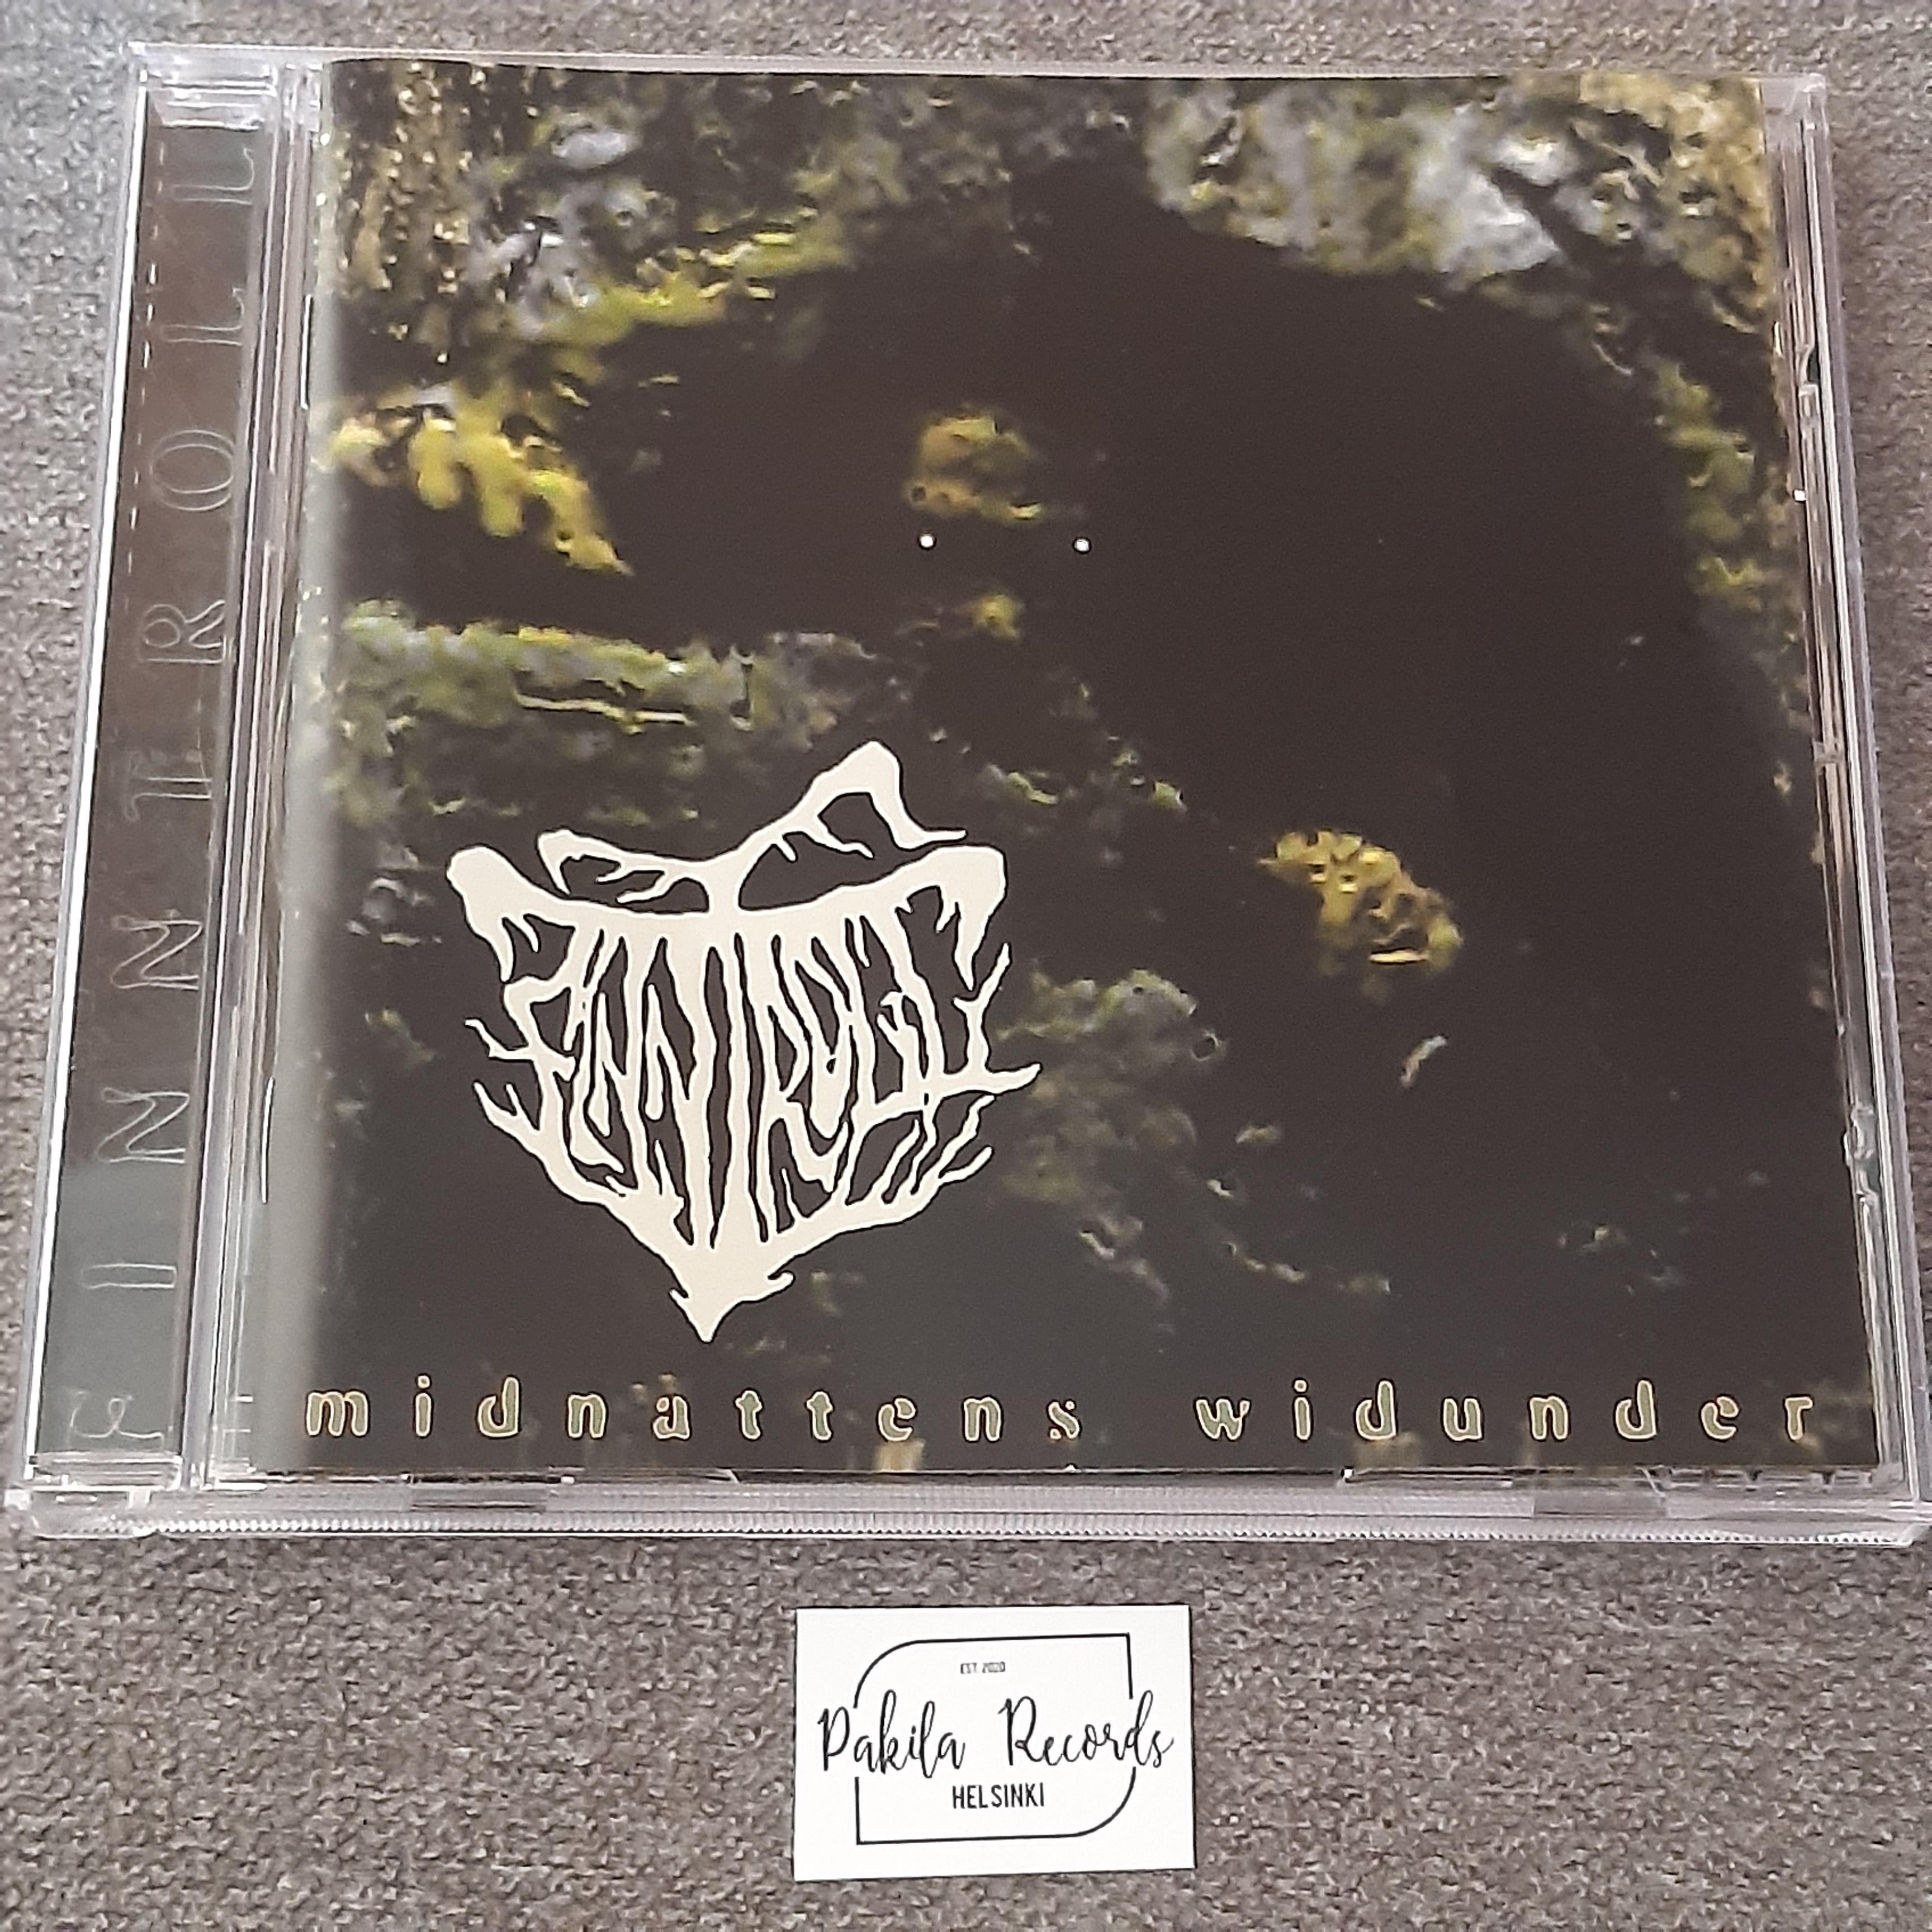 Finntroll - Midnattens widunder - CD (käytetty)